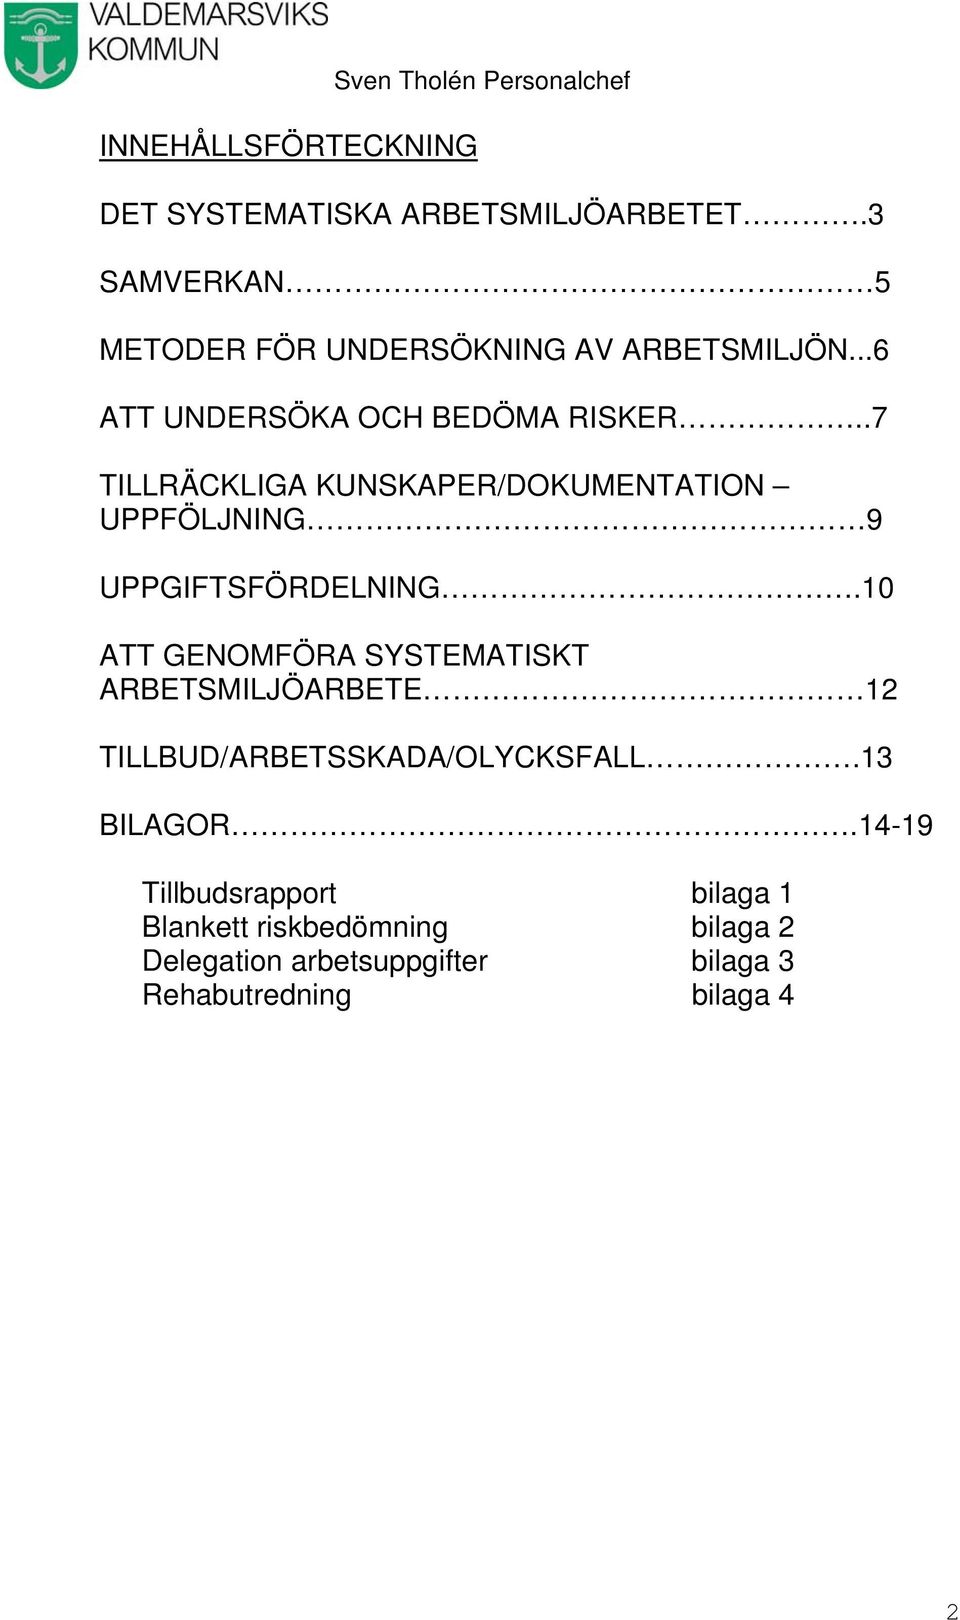 .7 TILLRÄCKLIGA KUNSKAPER/DOKUMENTATION UPPFÖLJNING 9 UPPGIFTSFÖRDELNING.